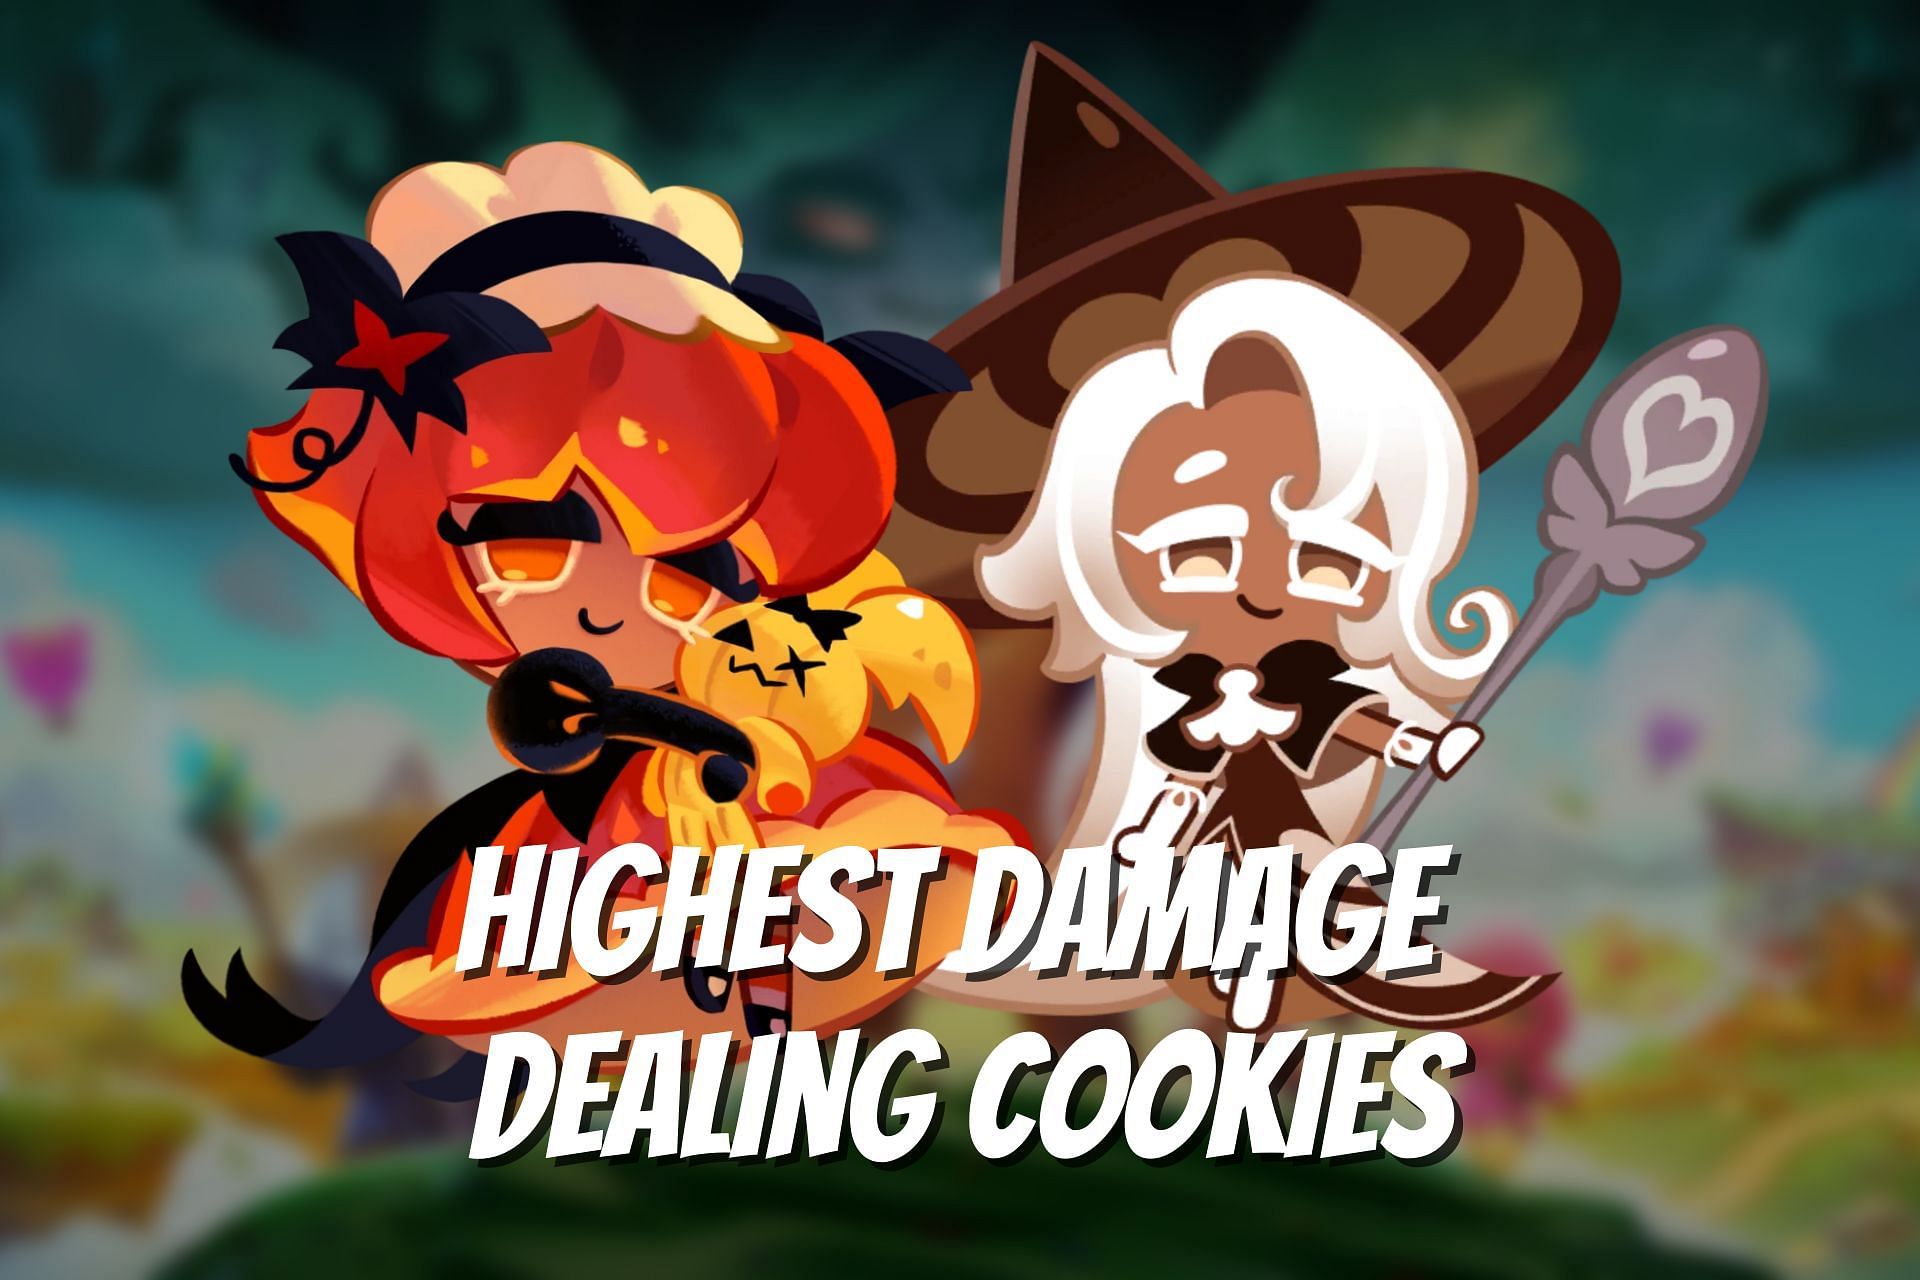 Highest damage dealing cookies (Image via Sportskeeda)